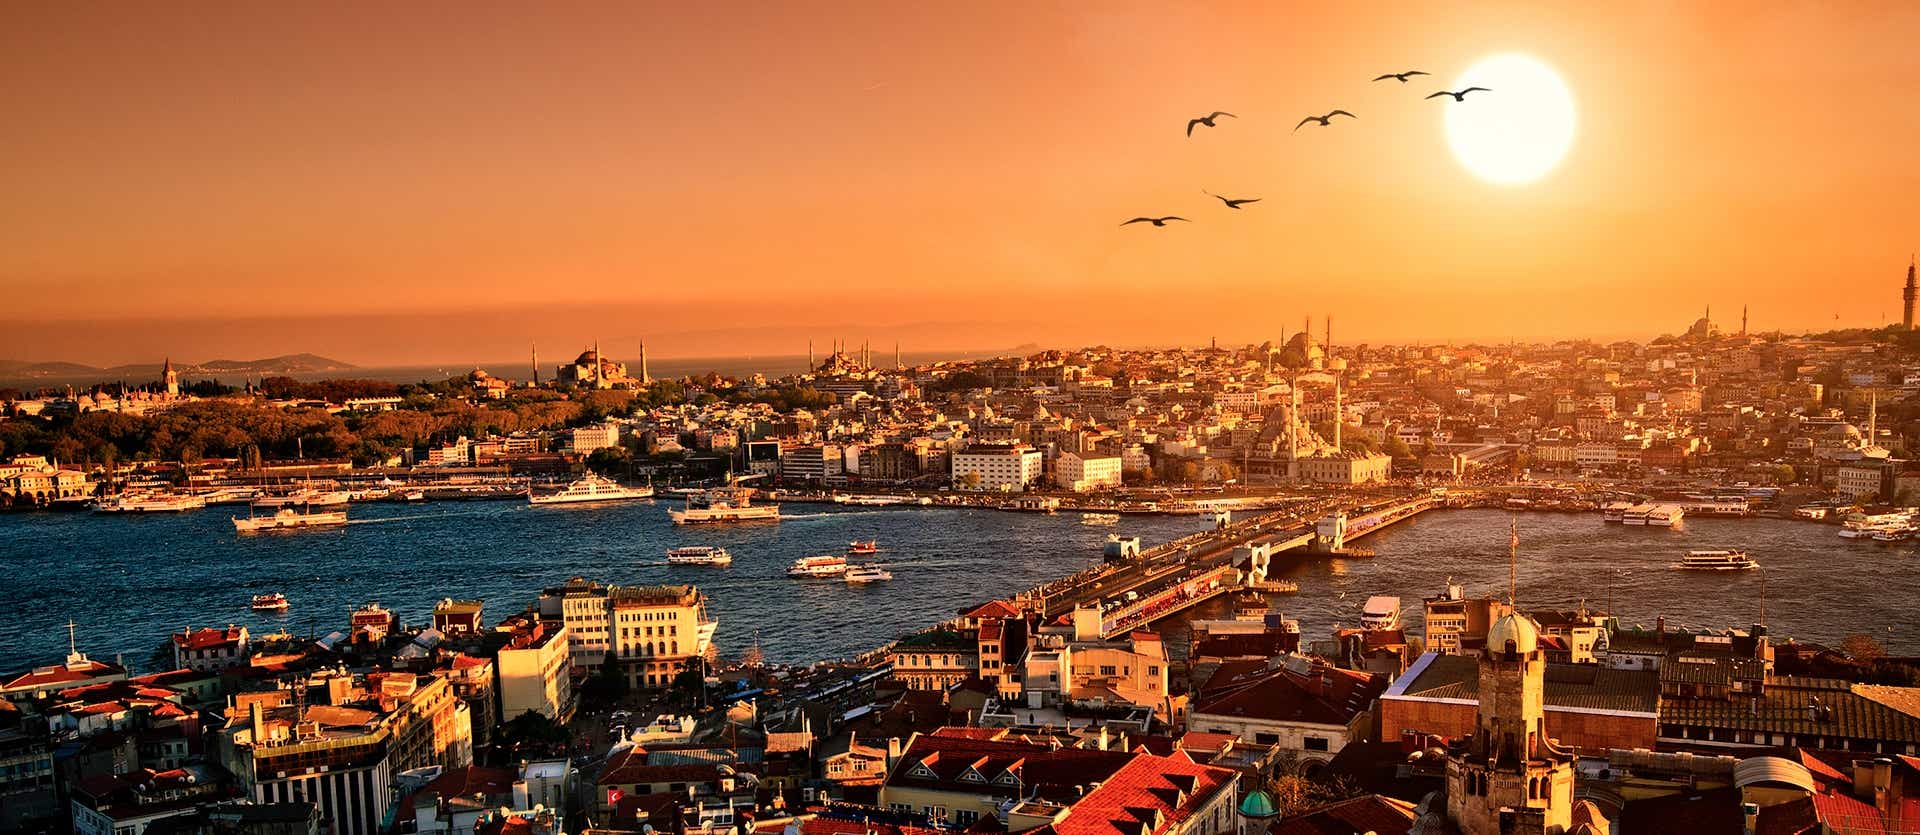 <span class="iconos separador"></span> Sunset over Istanbul <span class="iconos separador"></span>